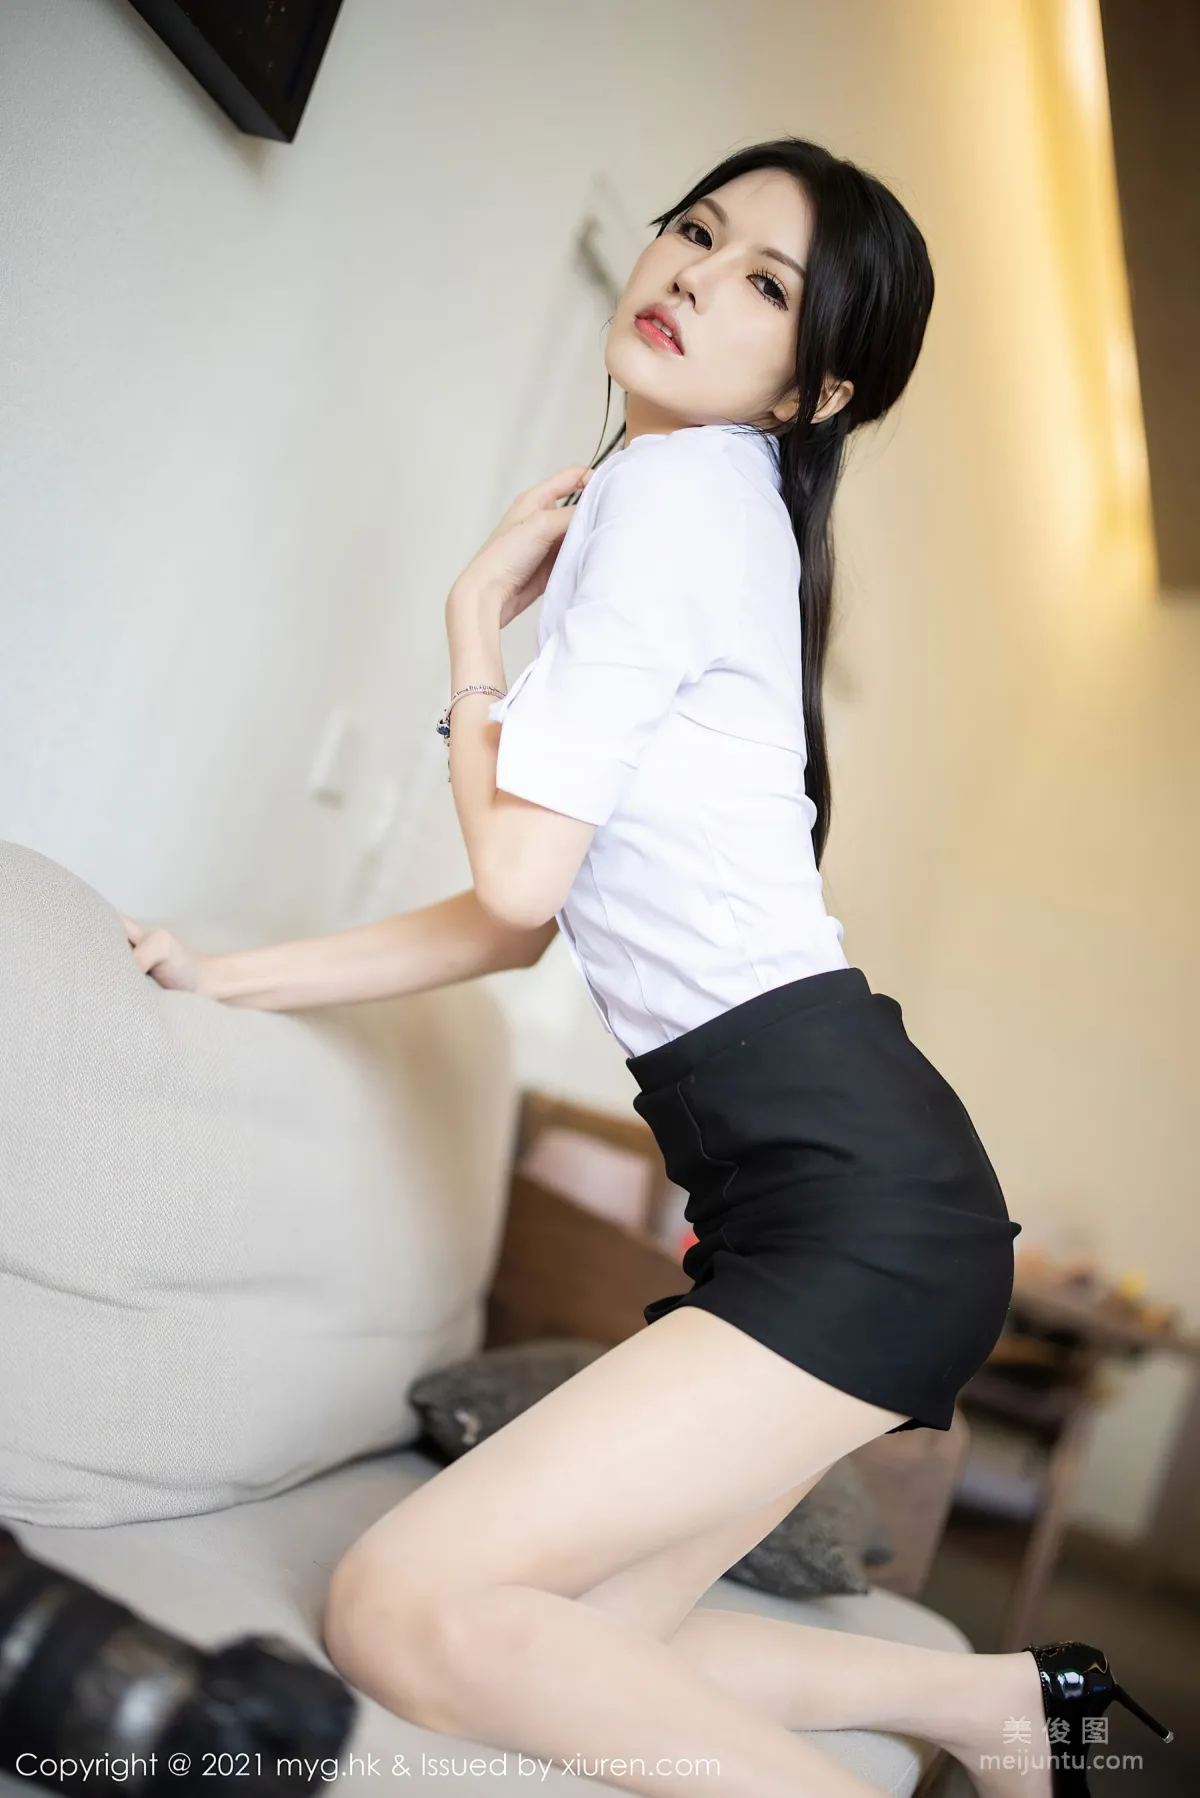 [美媛馆MyGirl] Vol.572 媛媛酱belle - 经典的白衬衫黑短裙系列14